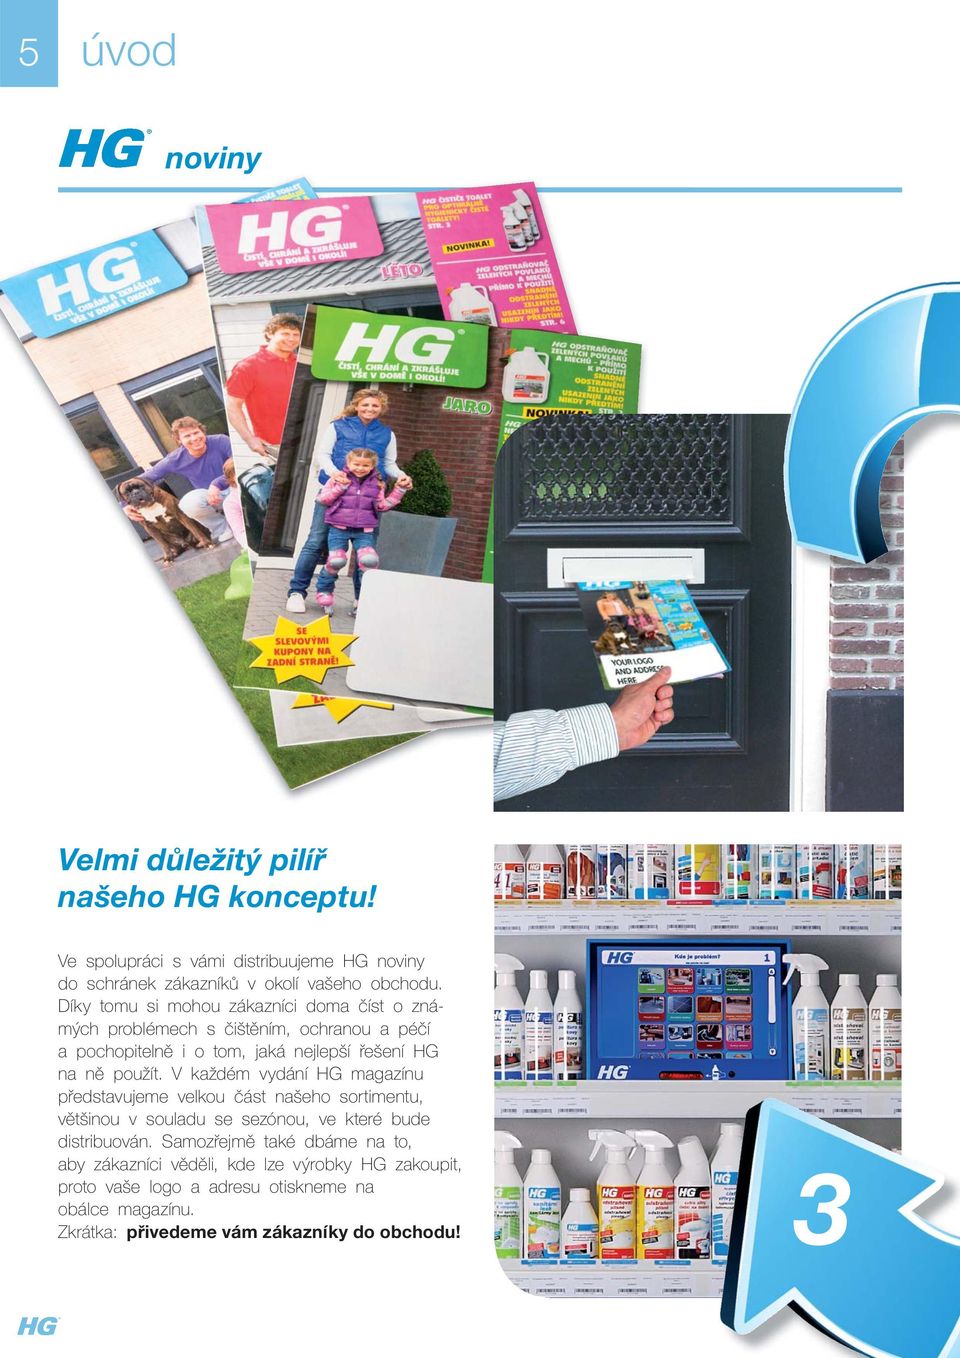 čištěním, ochranou a péčí a pochopitelně i o tom, jaká nejlepší řešení HG na ně použít V každém vydání HG magazínu představujeme velkou část našeho